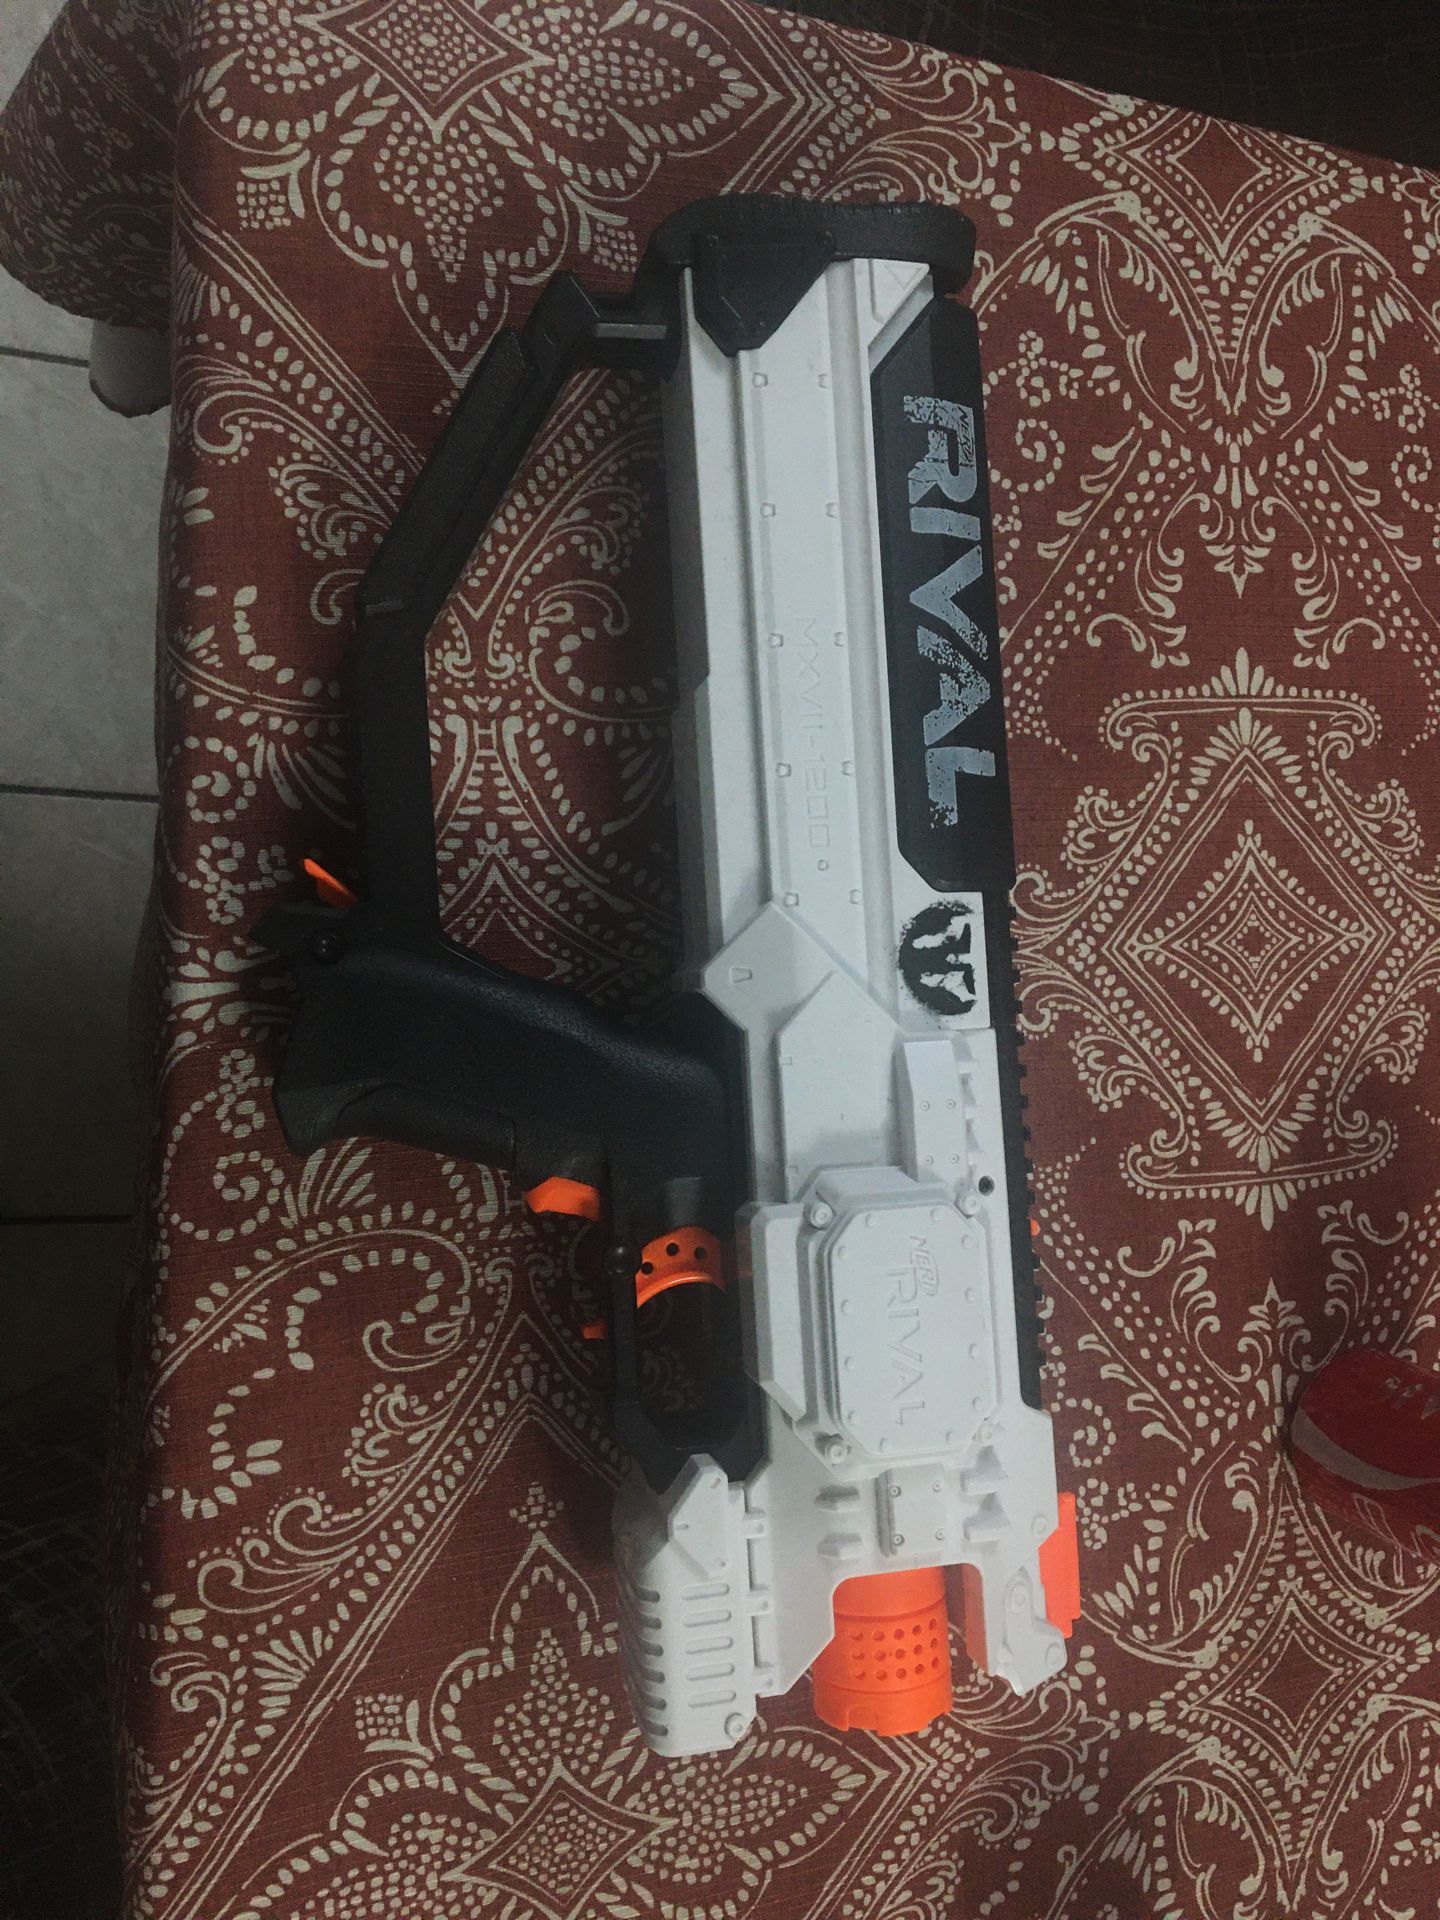 Nerf electric rival gun